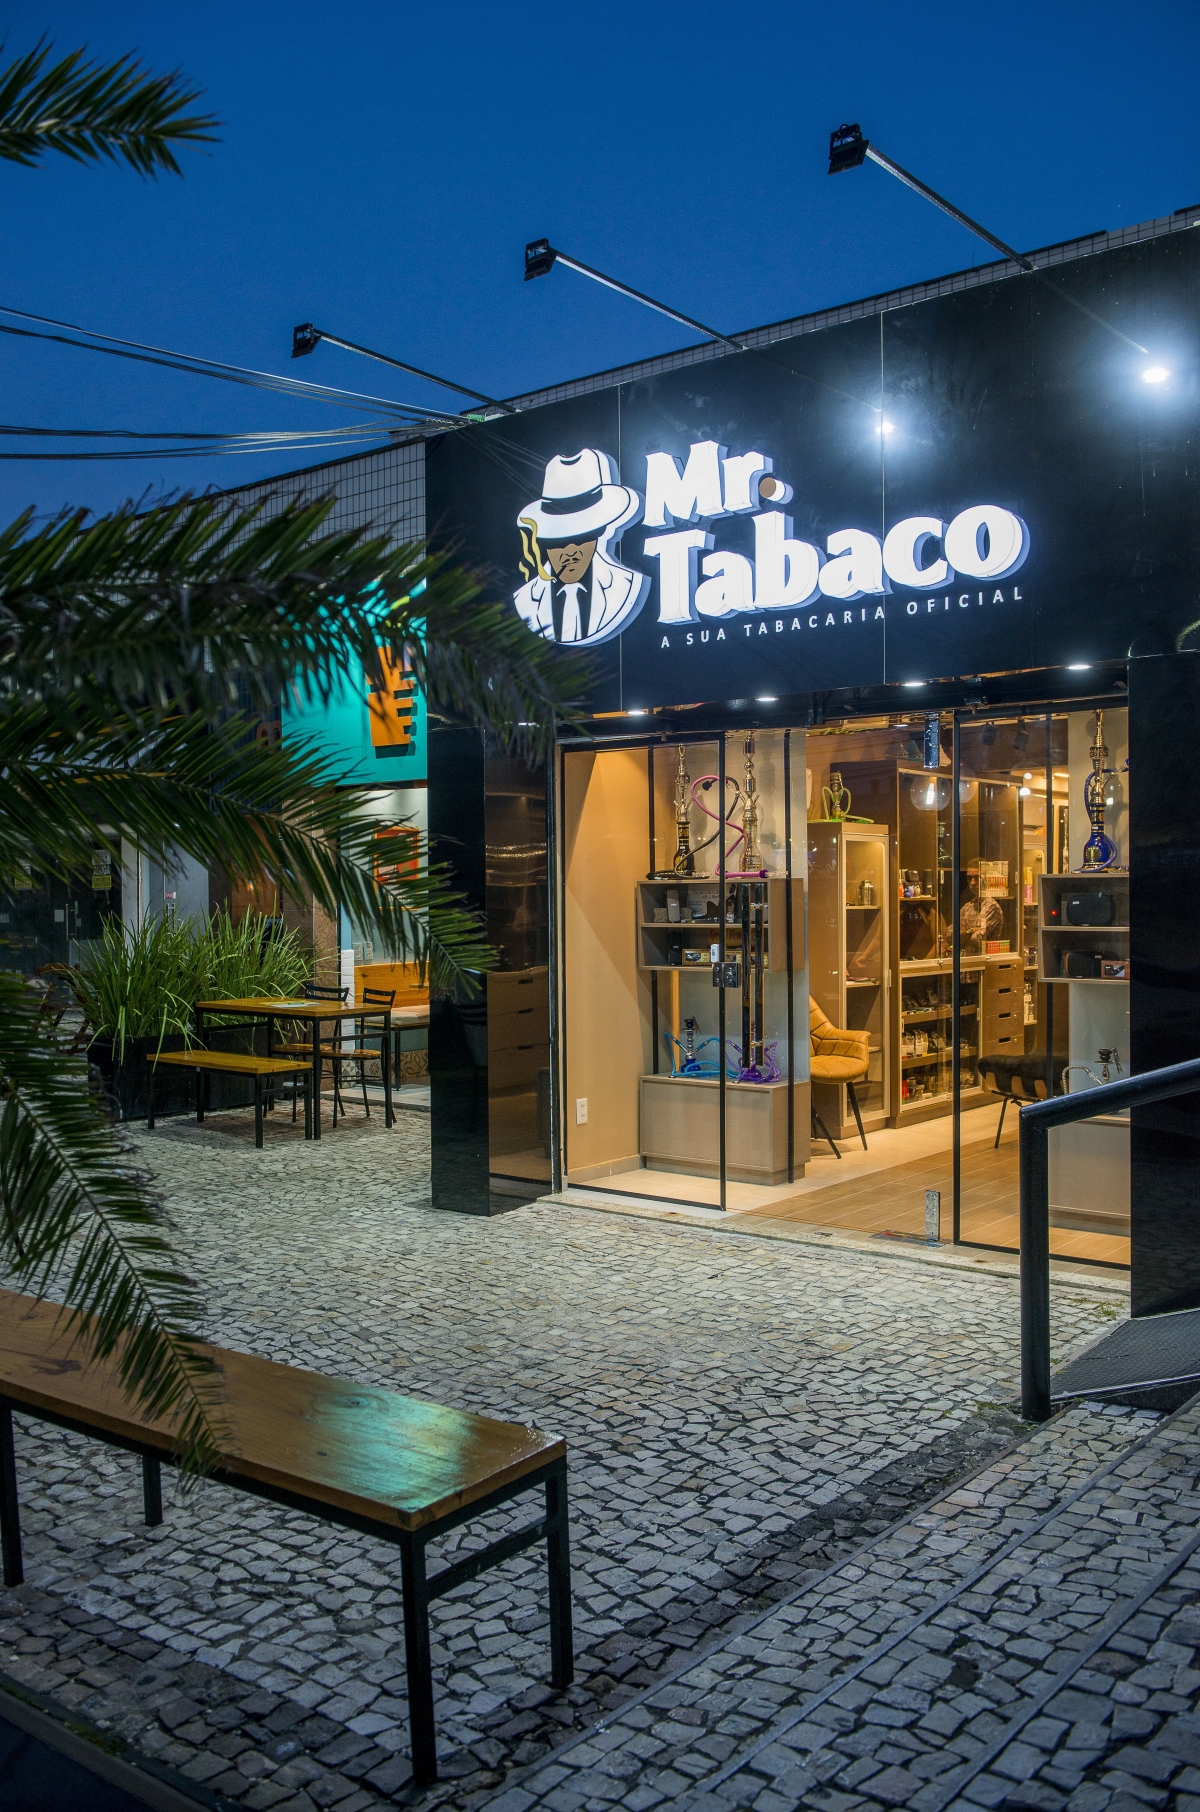 Tabacaria / Charutaria  - Projeto assinado - Área externa de consumo - bar , restaurante , passo  ponto comercial loja física